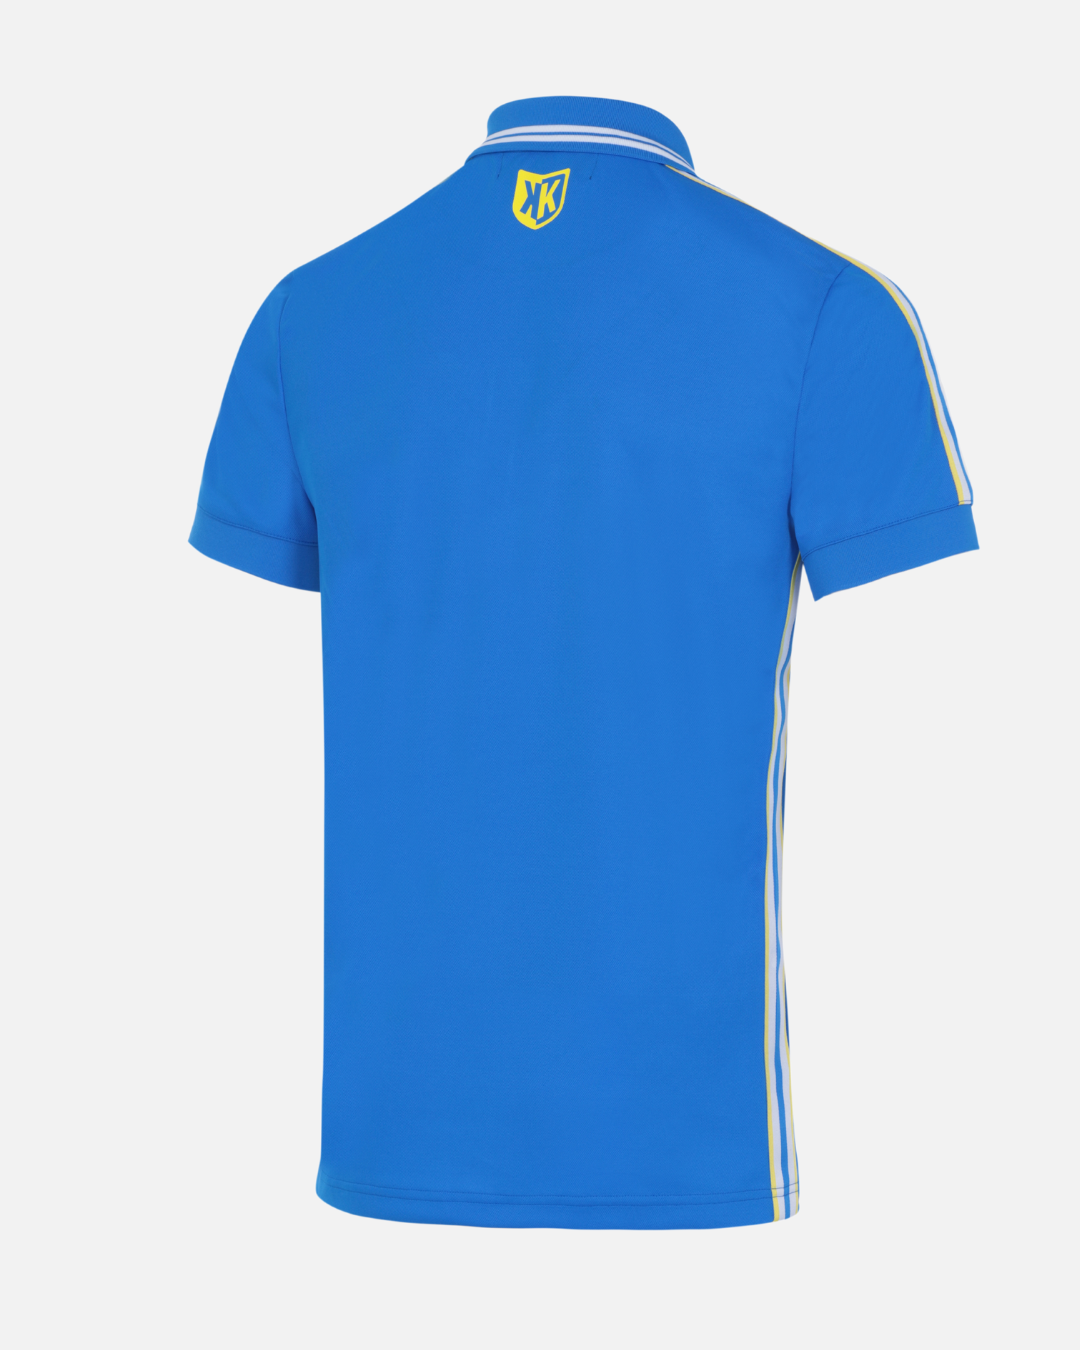 FK Teams Polo Shirt - Royal Blue/White/Yellow 